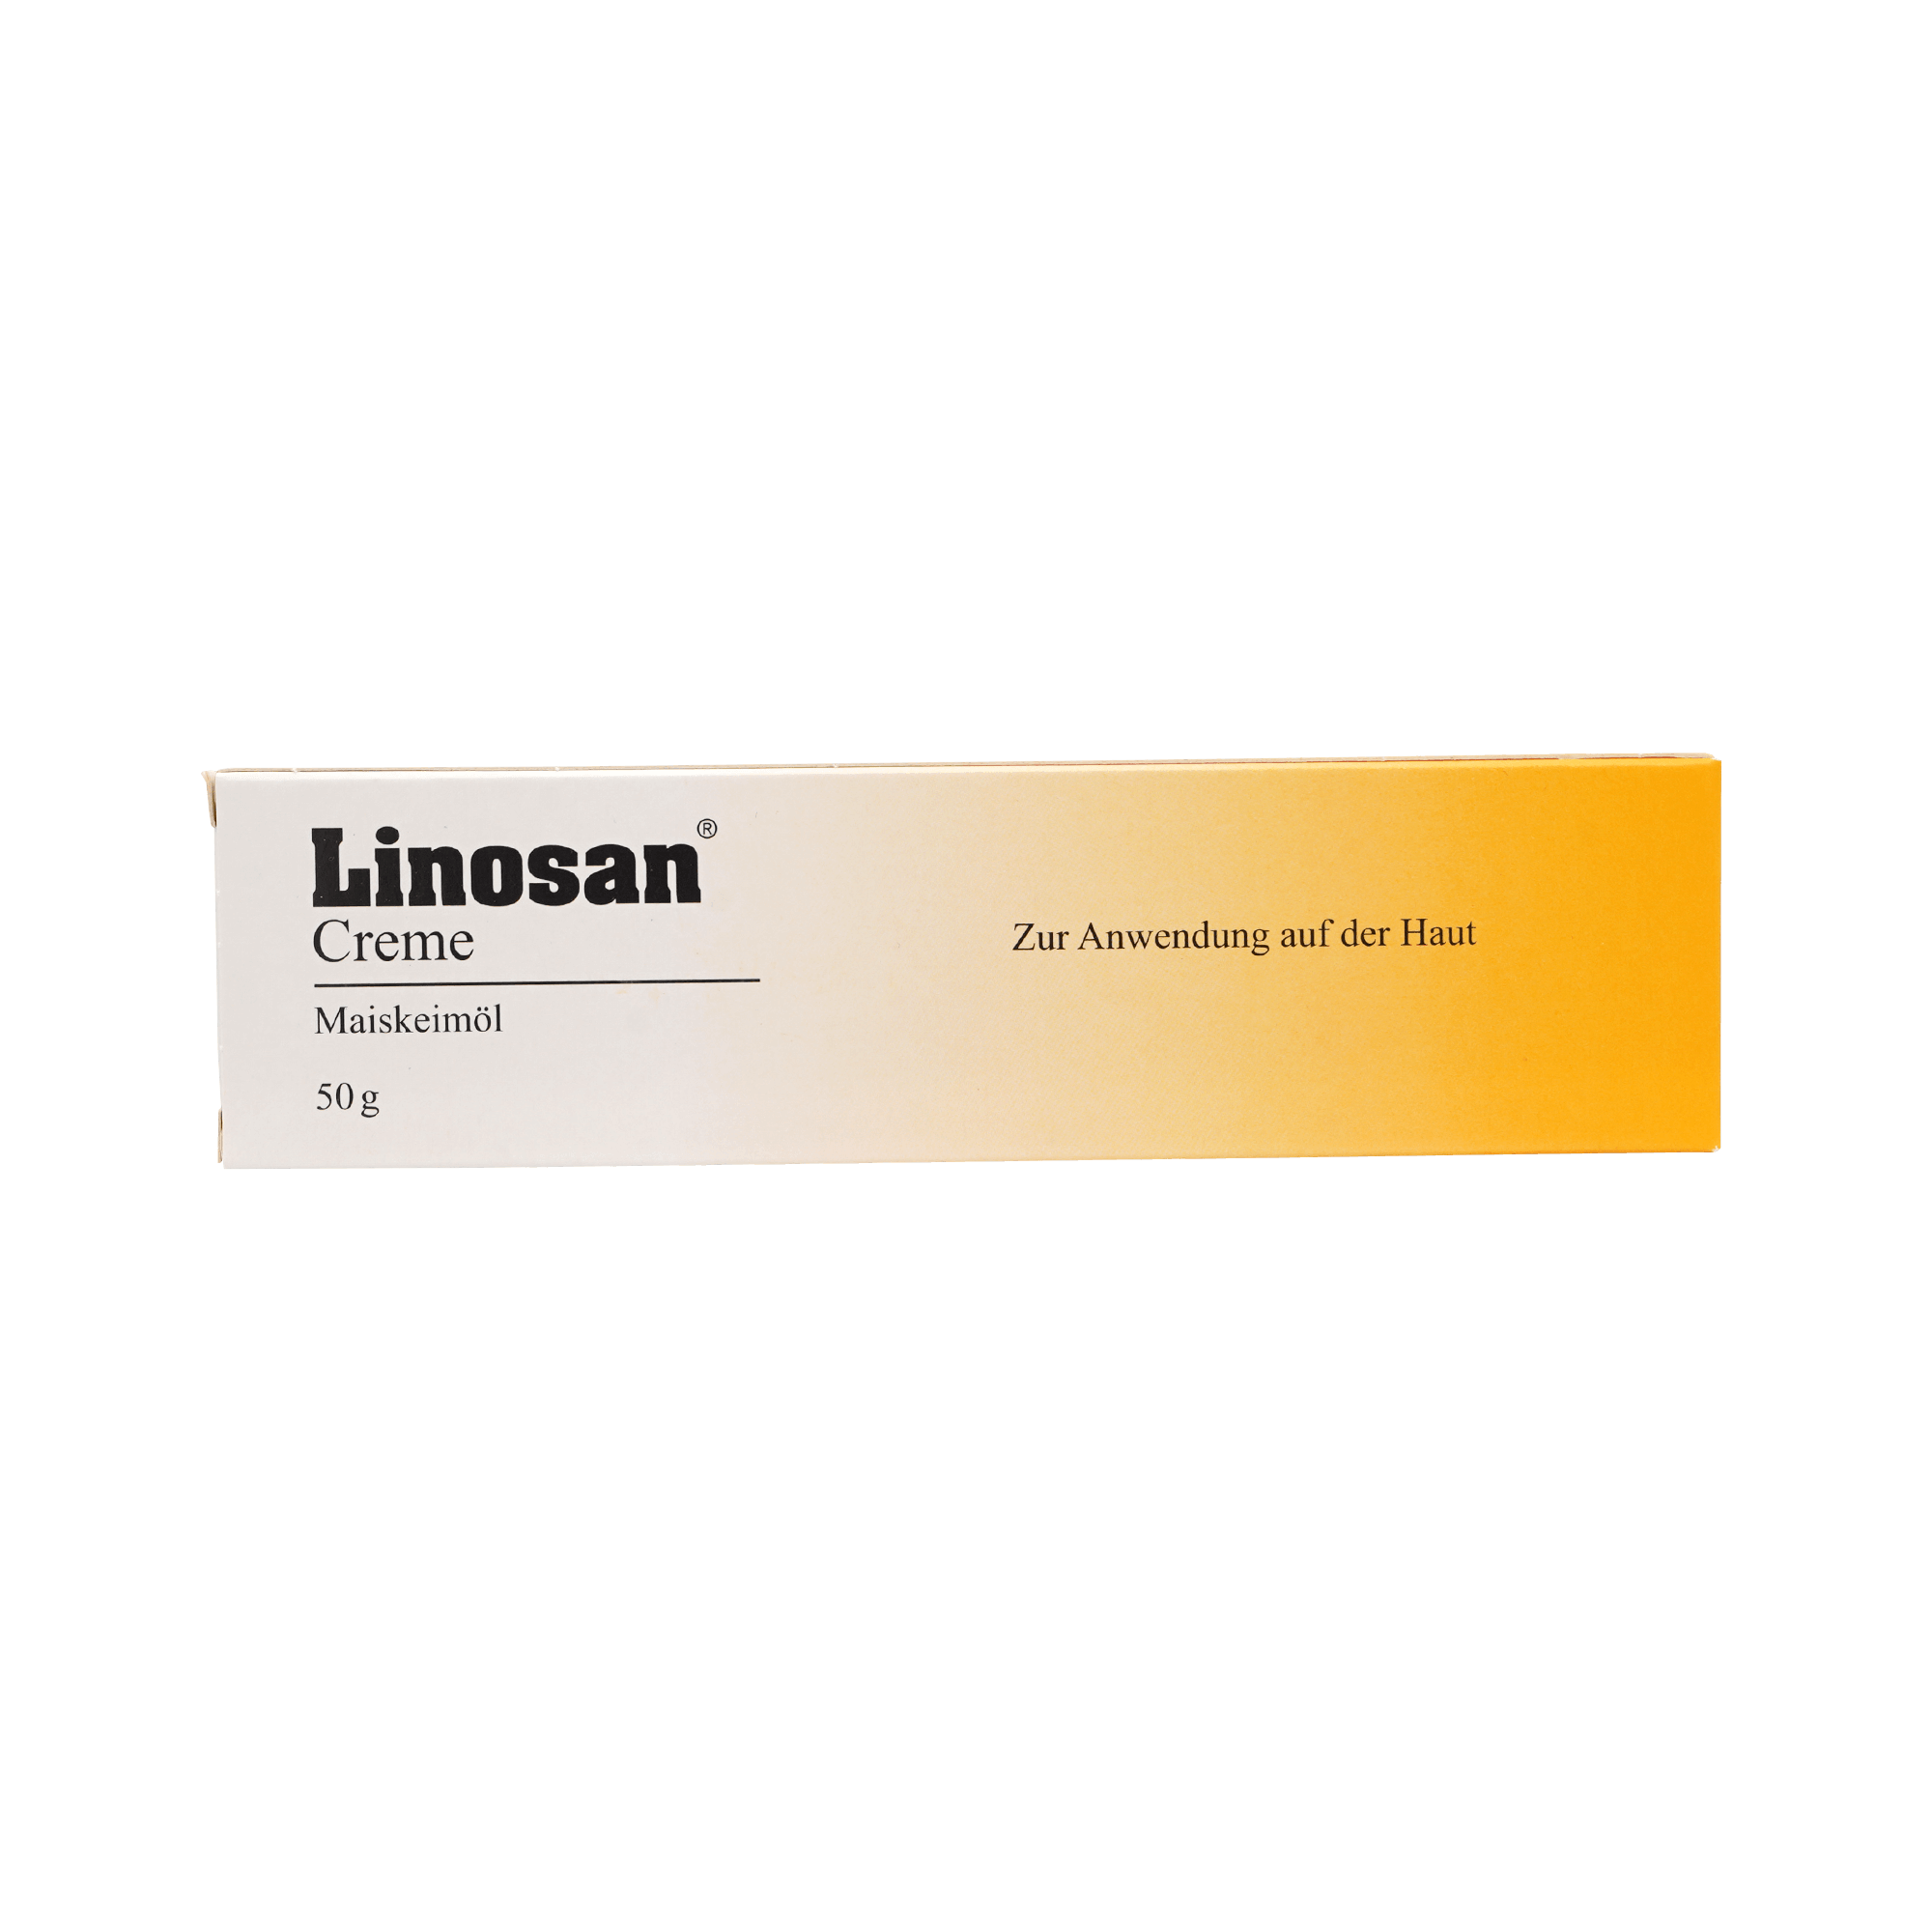 Linosan Creme (50g)